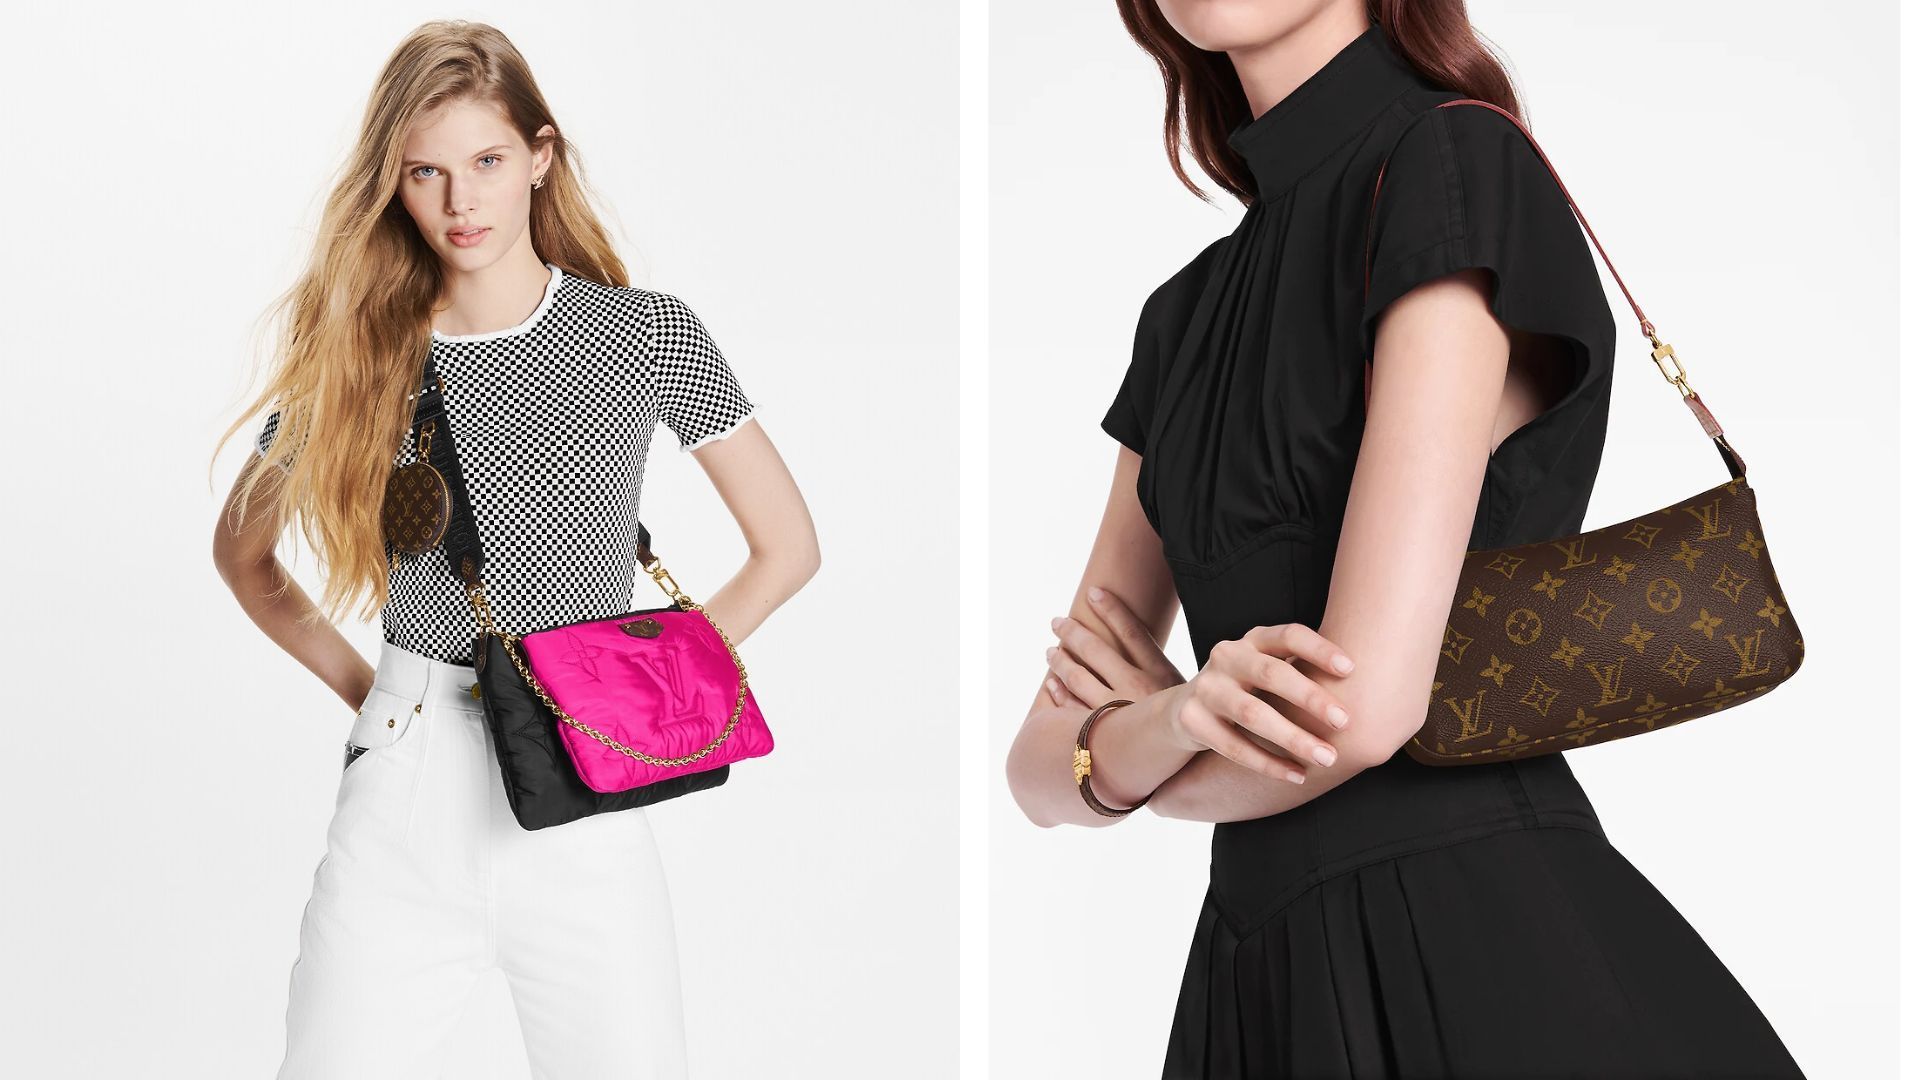 Louis Vuitton Petite Malle Capitale bag🌟 #louisvuitton #fall23  #petitemallecapitale #bag #fashion #style